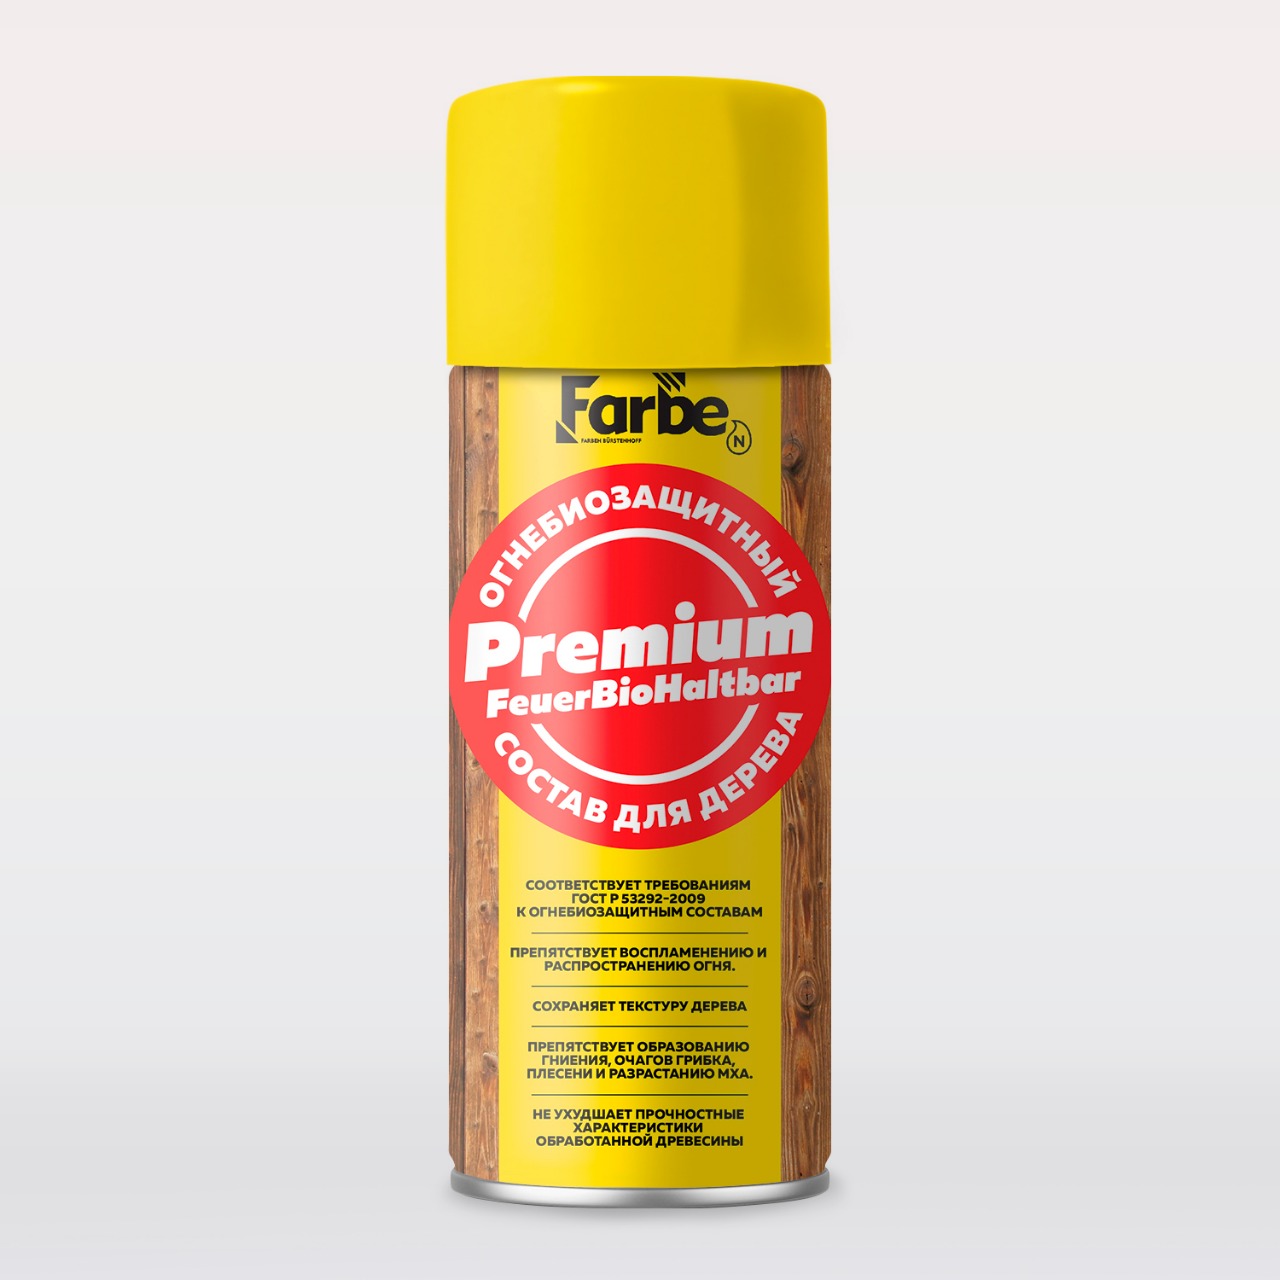 Огнебиозащита Premium FeuerBioHaltbar - Огнебиозащитный состав для дерева купить оптом от производителя